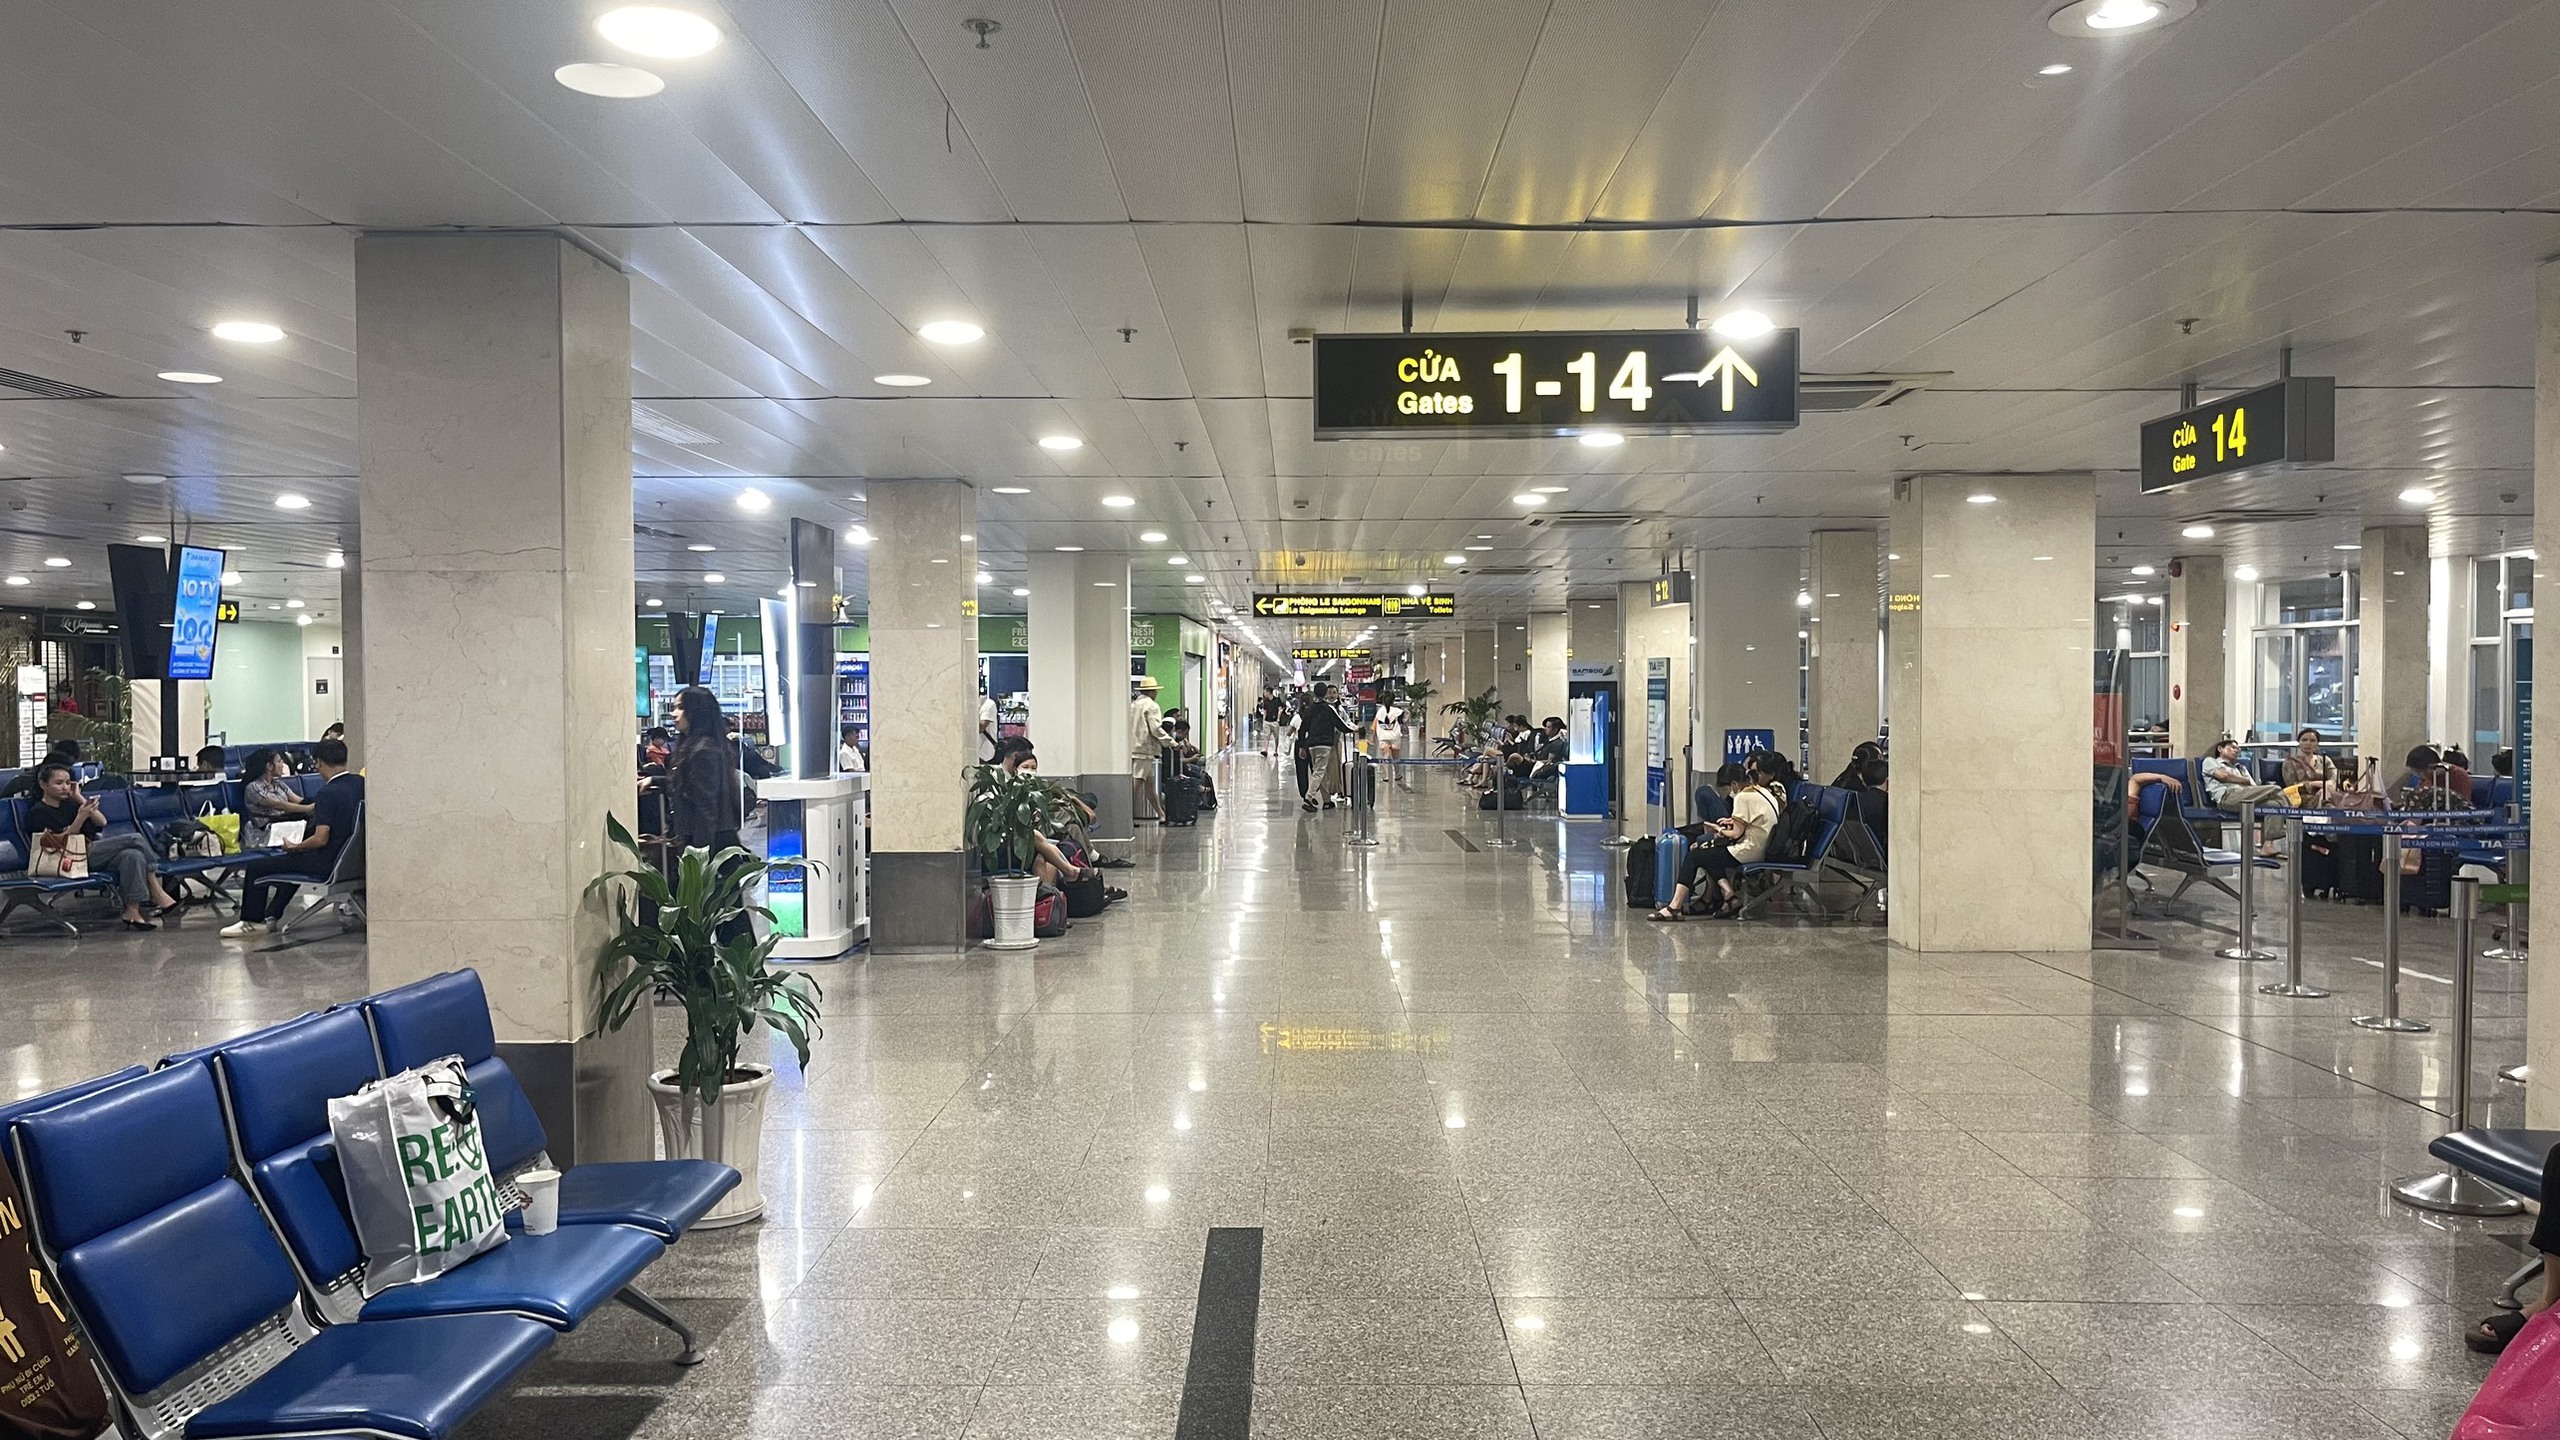 Hình ảnh khác lạ tại sân bay Tân Sơn Nhất trong ngày cuối kỳ nghỉ lễ- Ảnh 4.